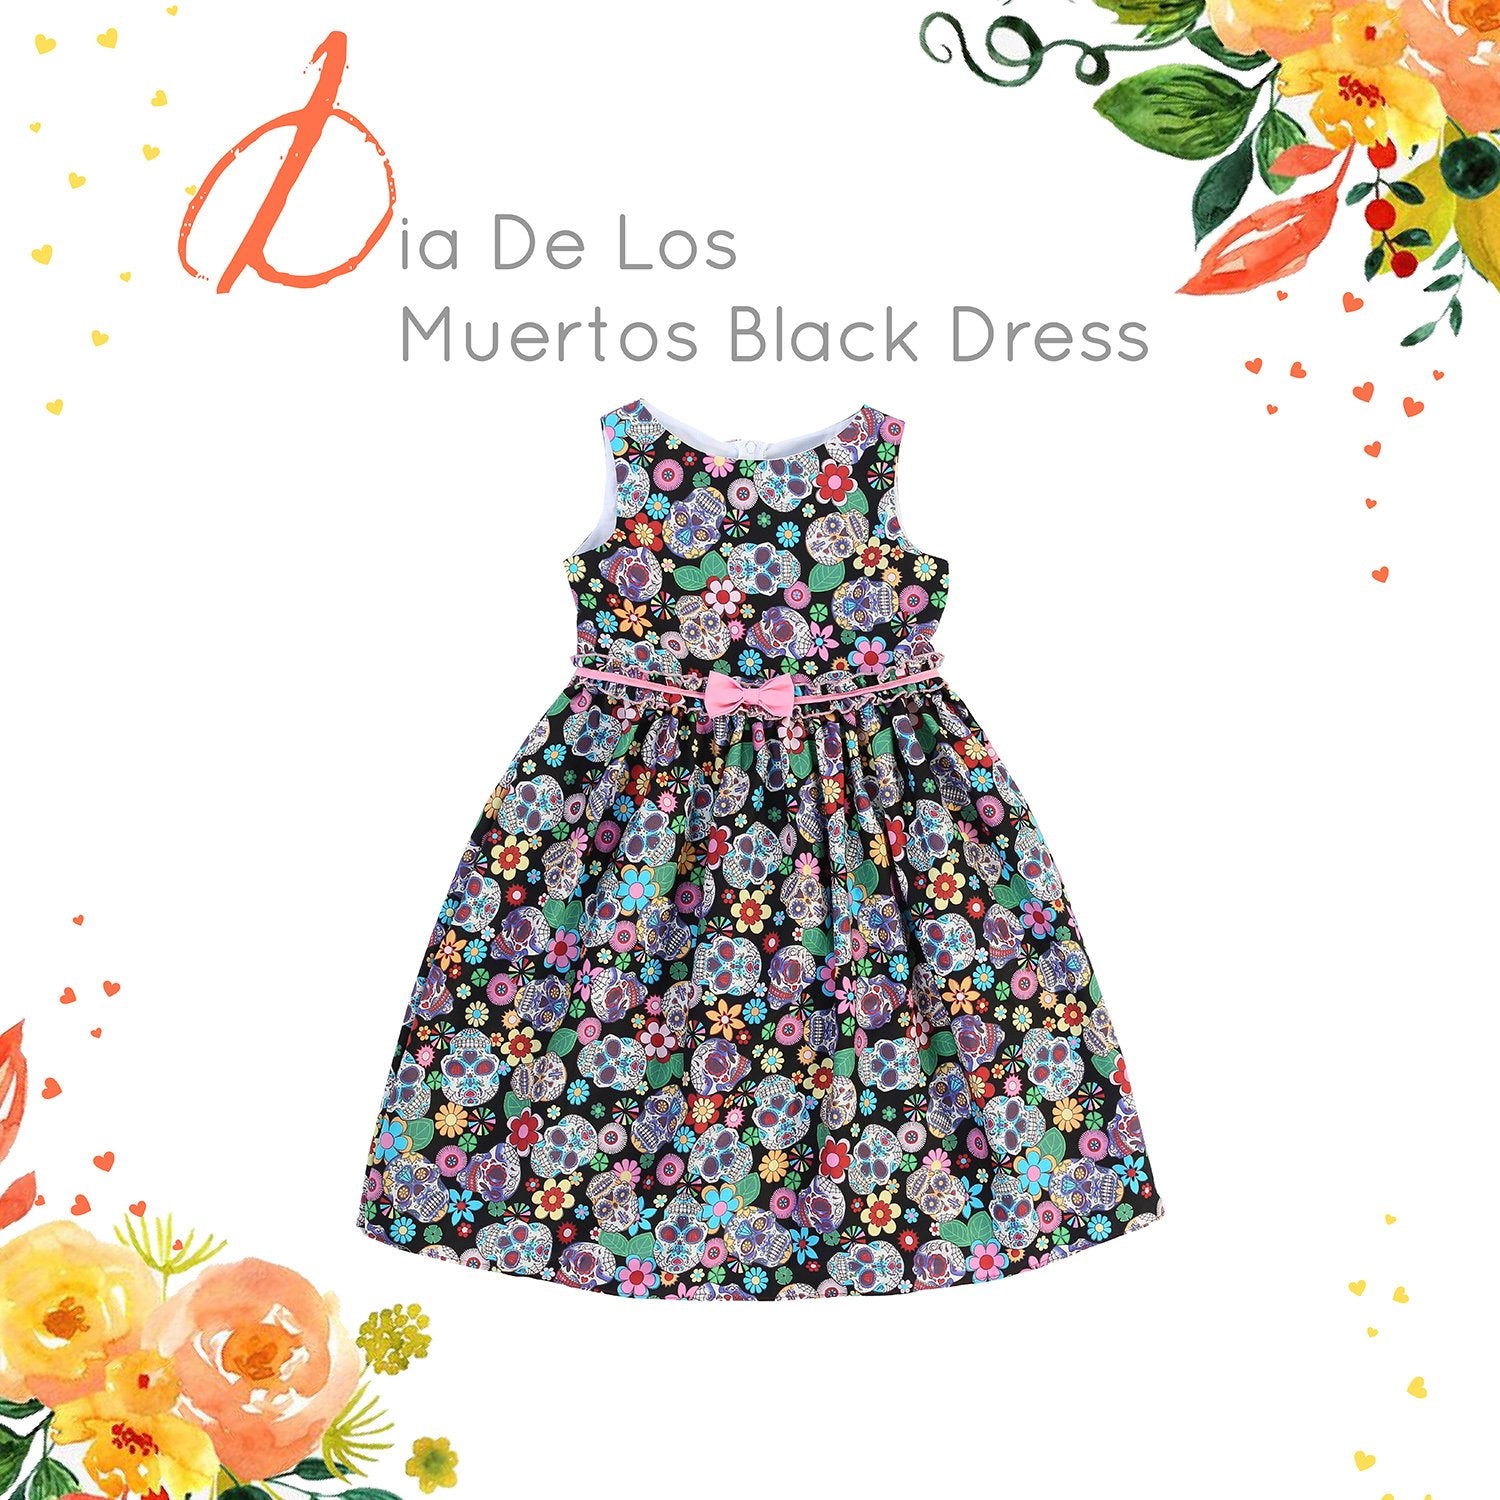 Dress - Black Dia De Los Muertos Print Cotton Dress With Bow